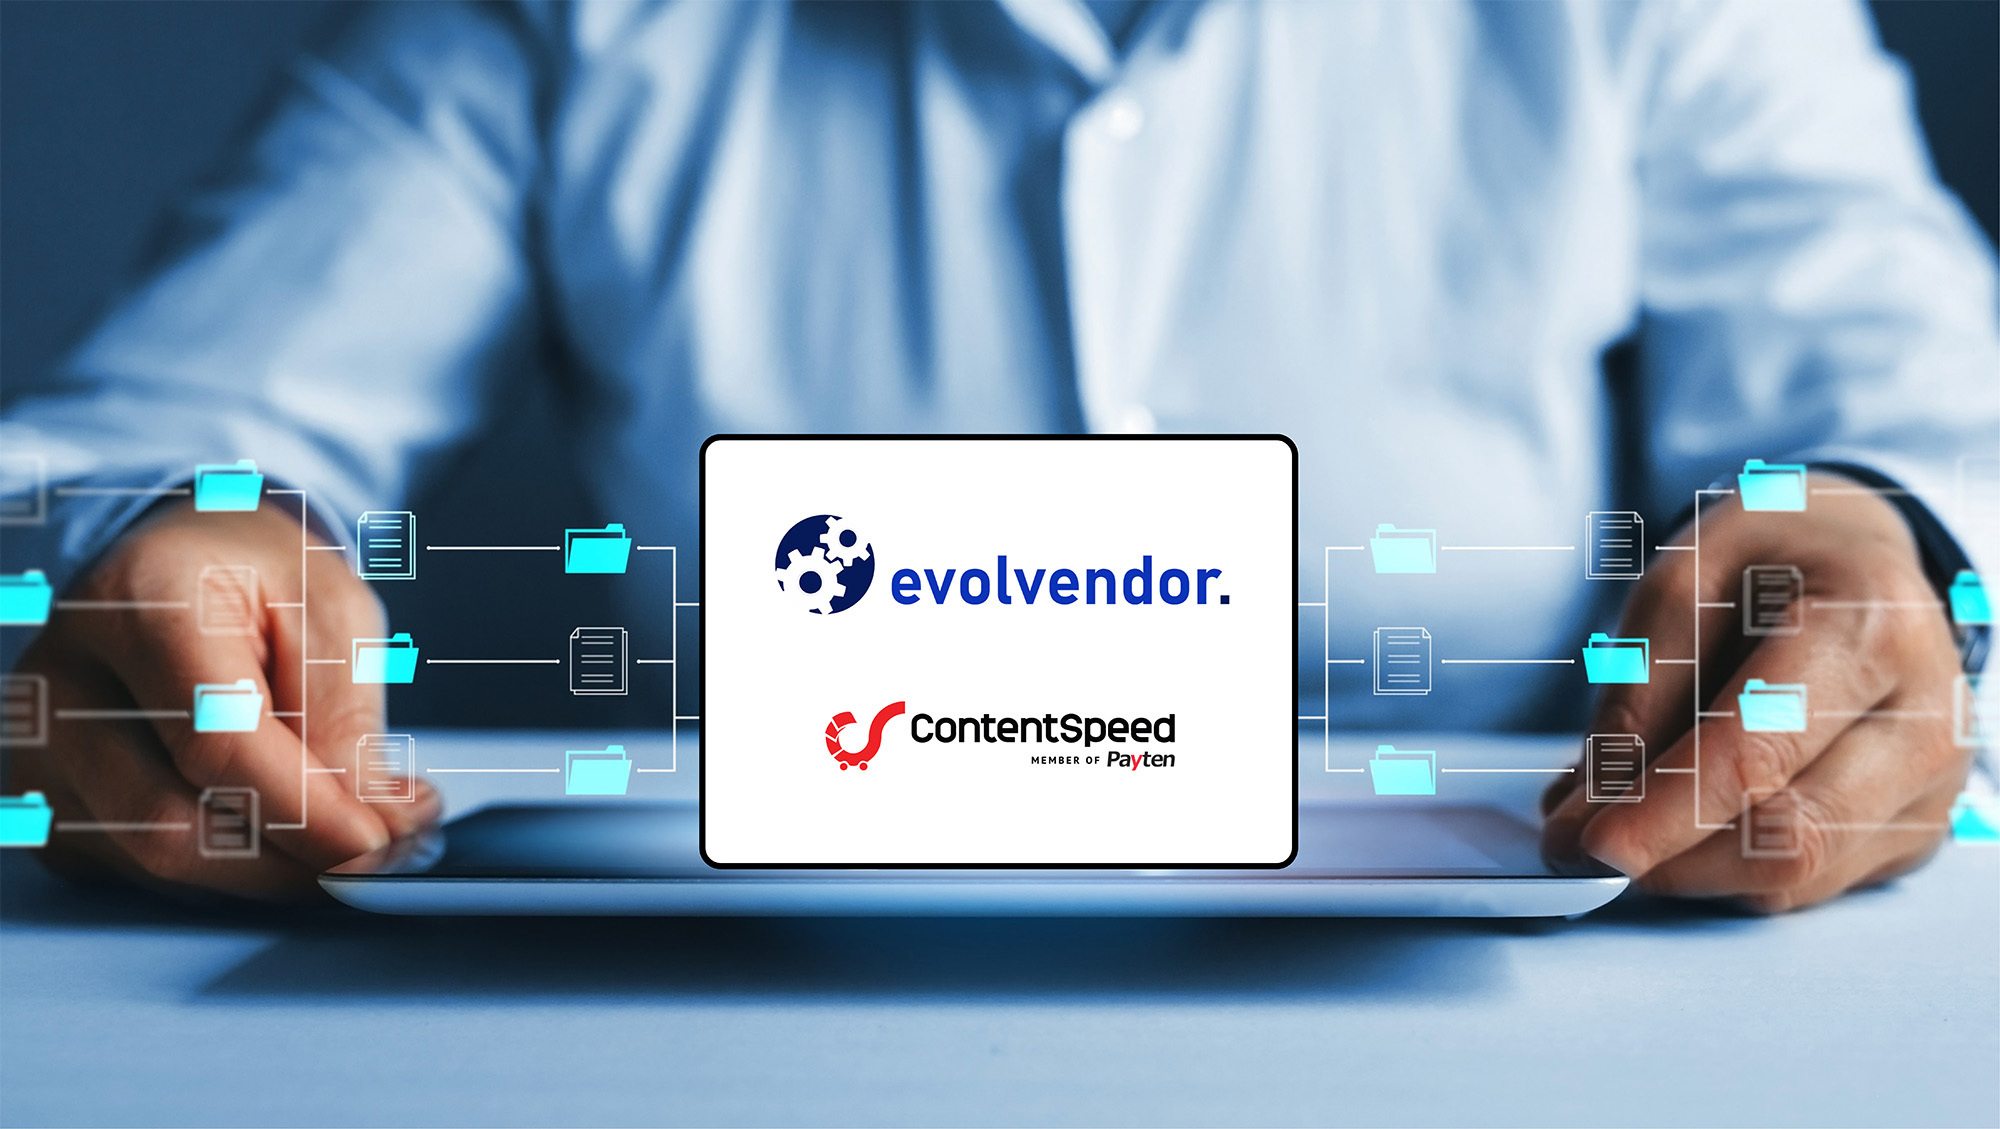 Partneriat nou între ContentSpeed şi Evolvendor: Automatizăm procesarea de documente pentru segmentul B2B